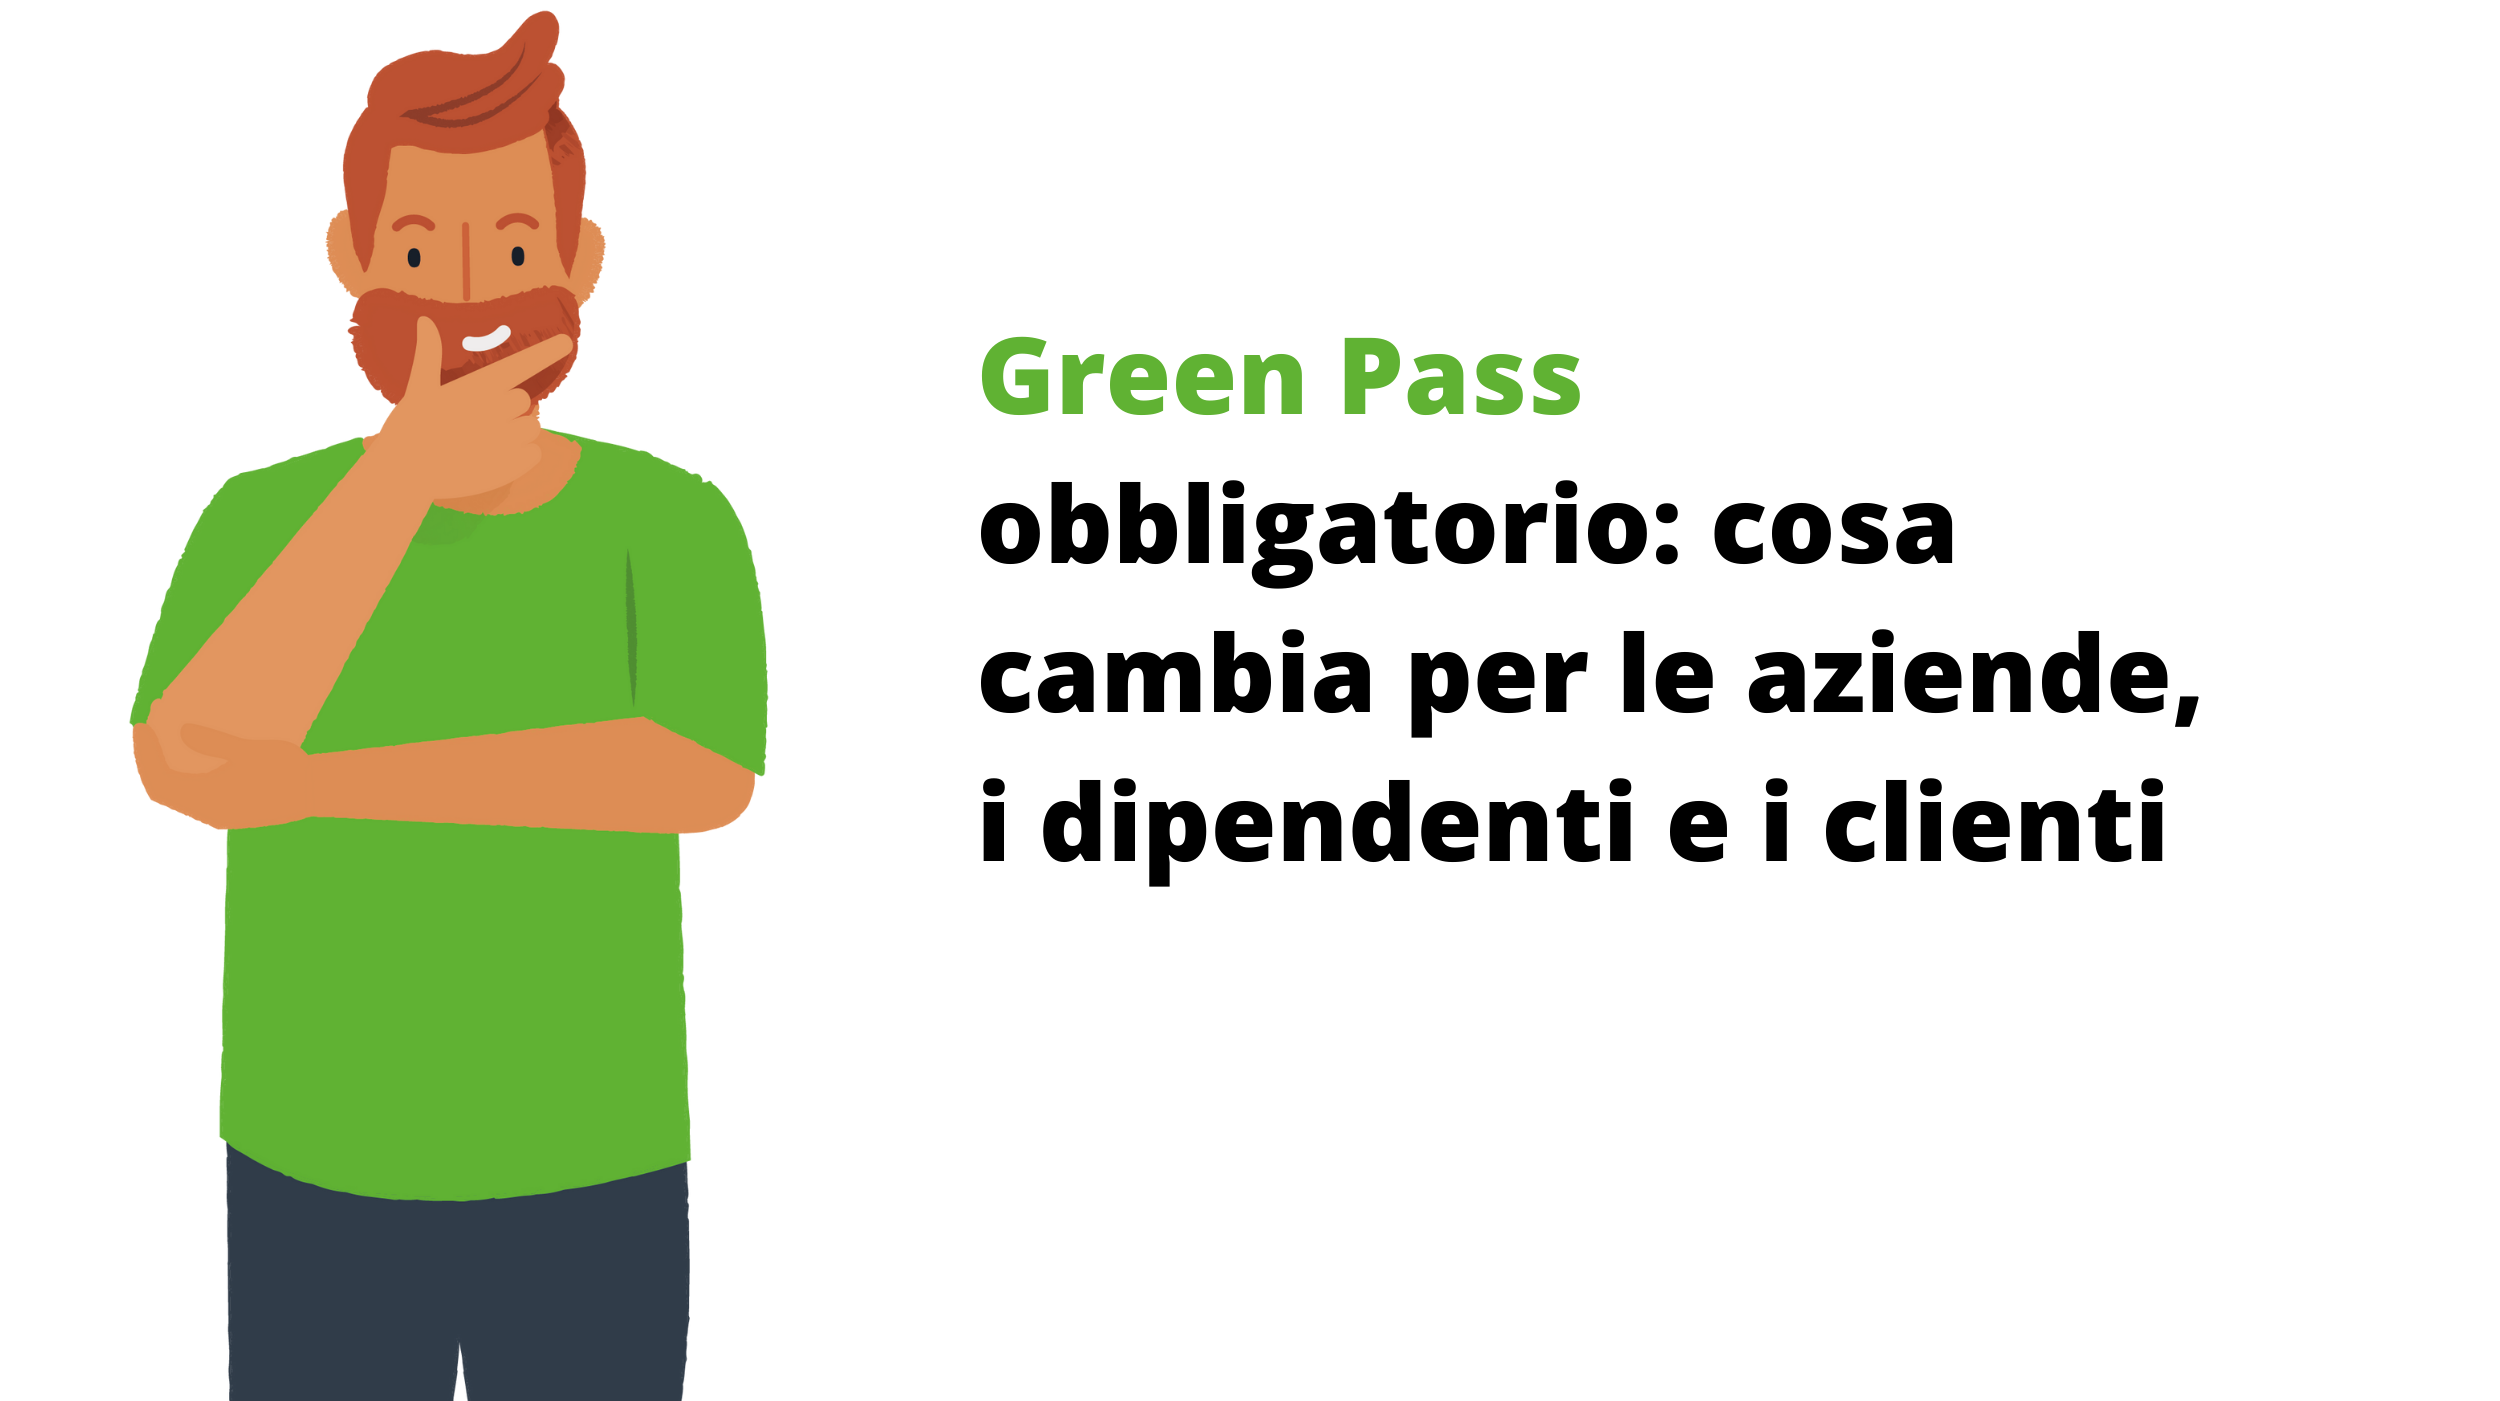 Green Pass obbligatorio: cosa cambia?